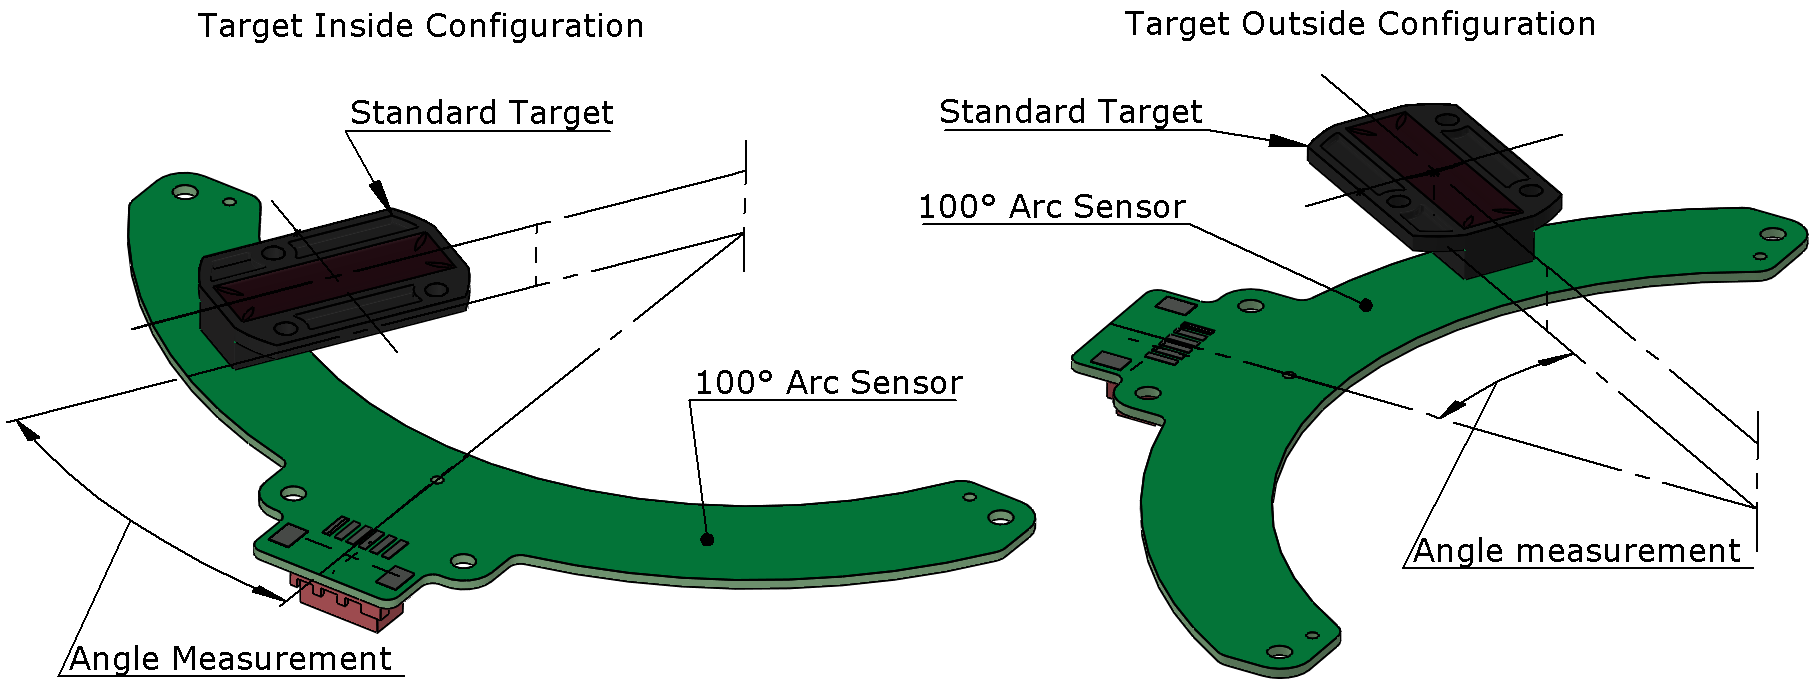 Arc Sensor Standard Target Configurations - Target Inside and Target Outside